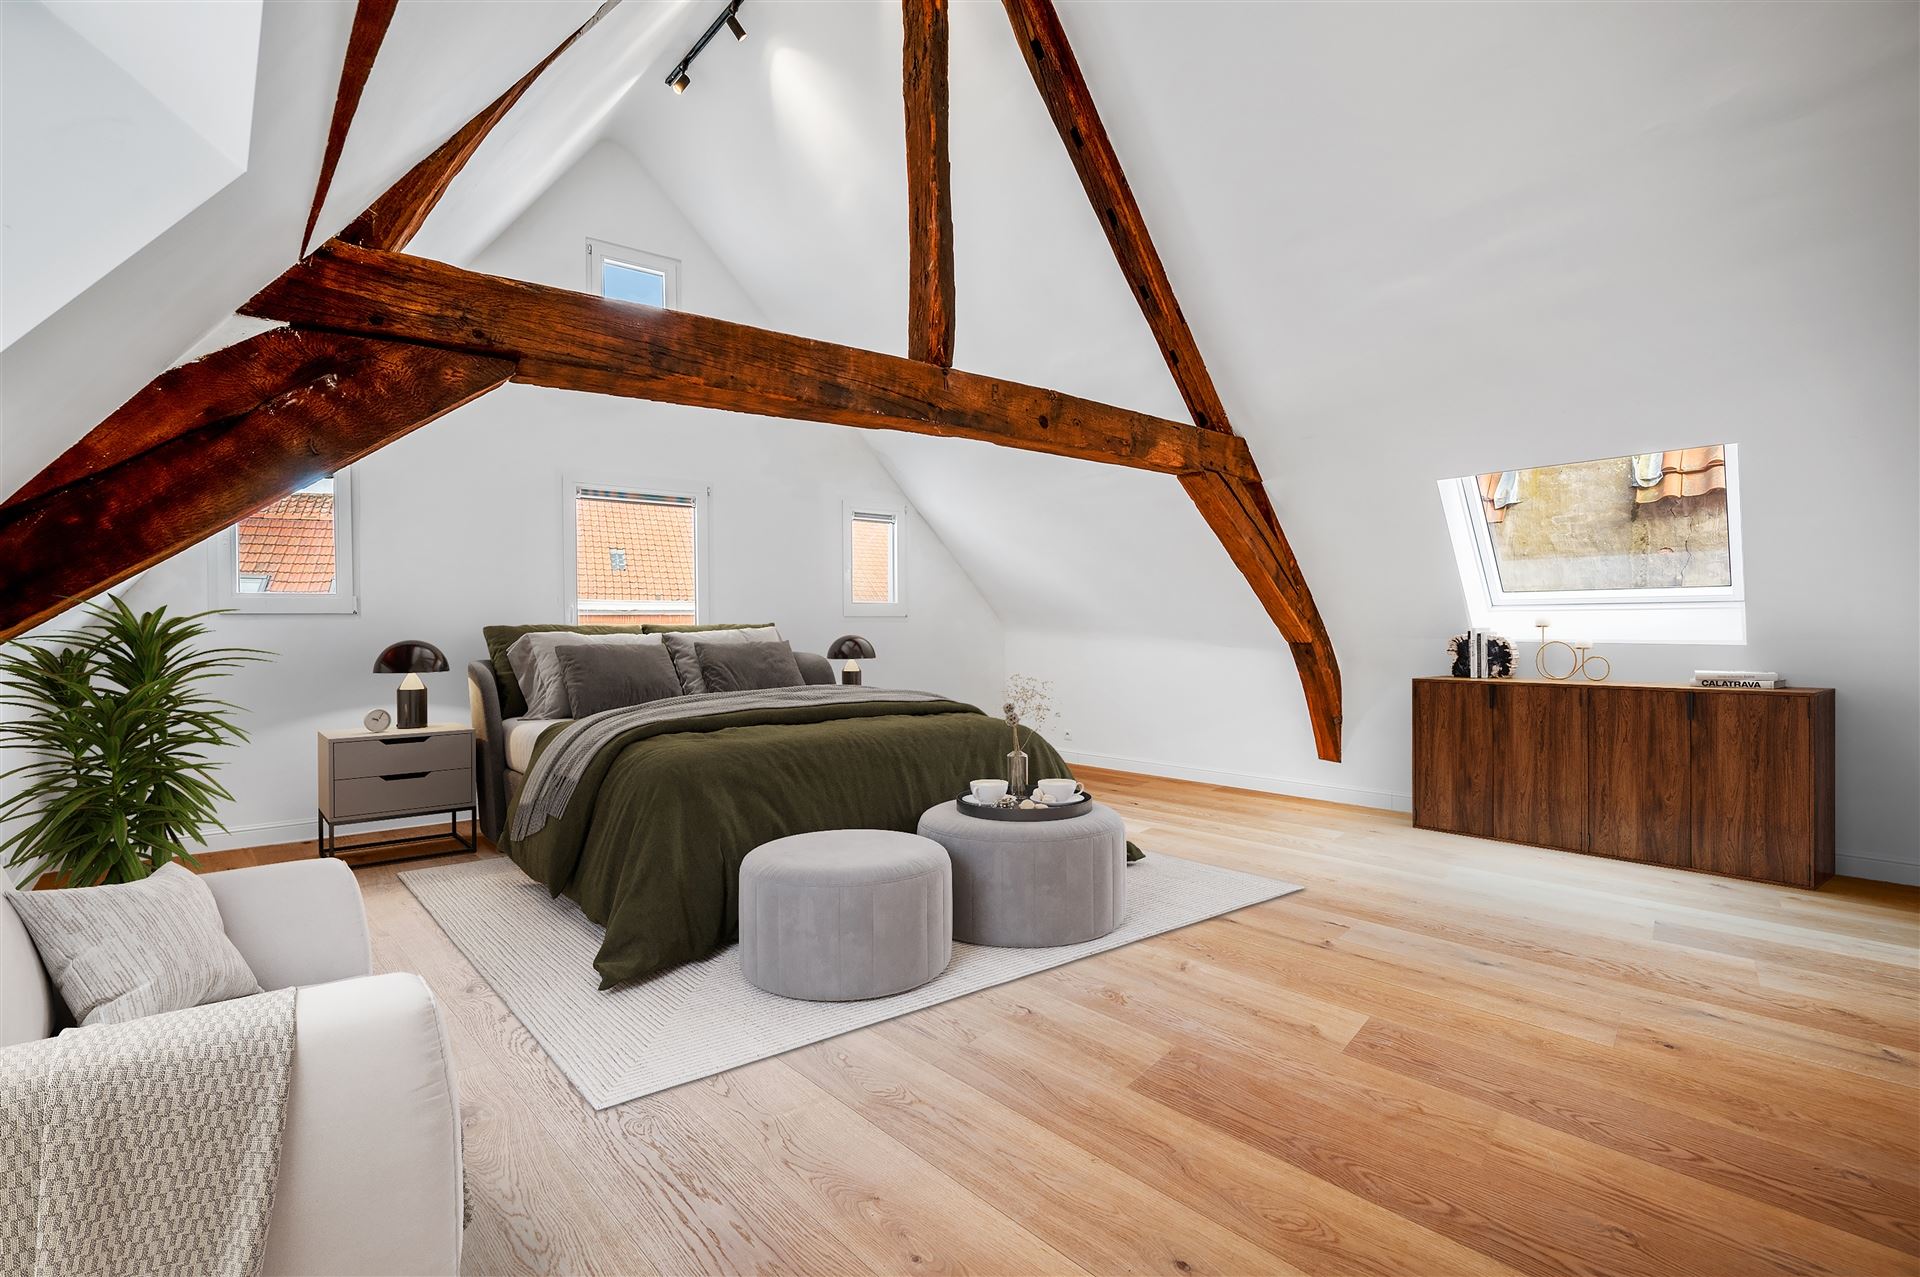 Prachtige energiezuinige woning met 5 slaapkamers en garage pal in het centrum van de bruisende stad Mechelen foto 25